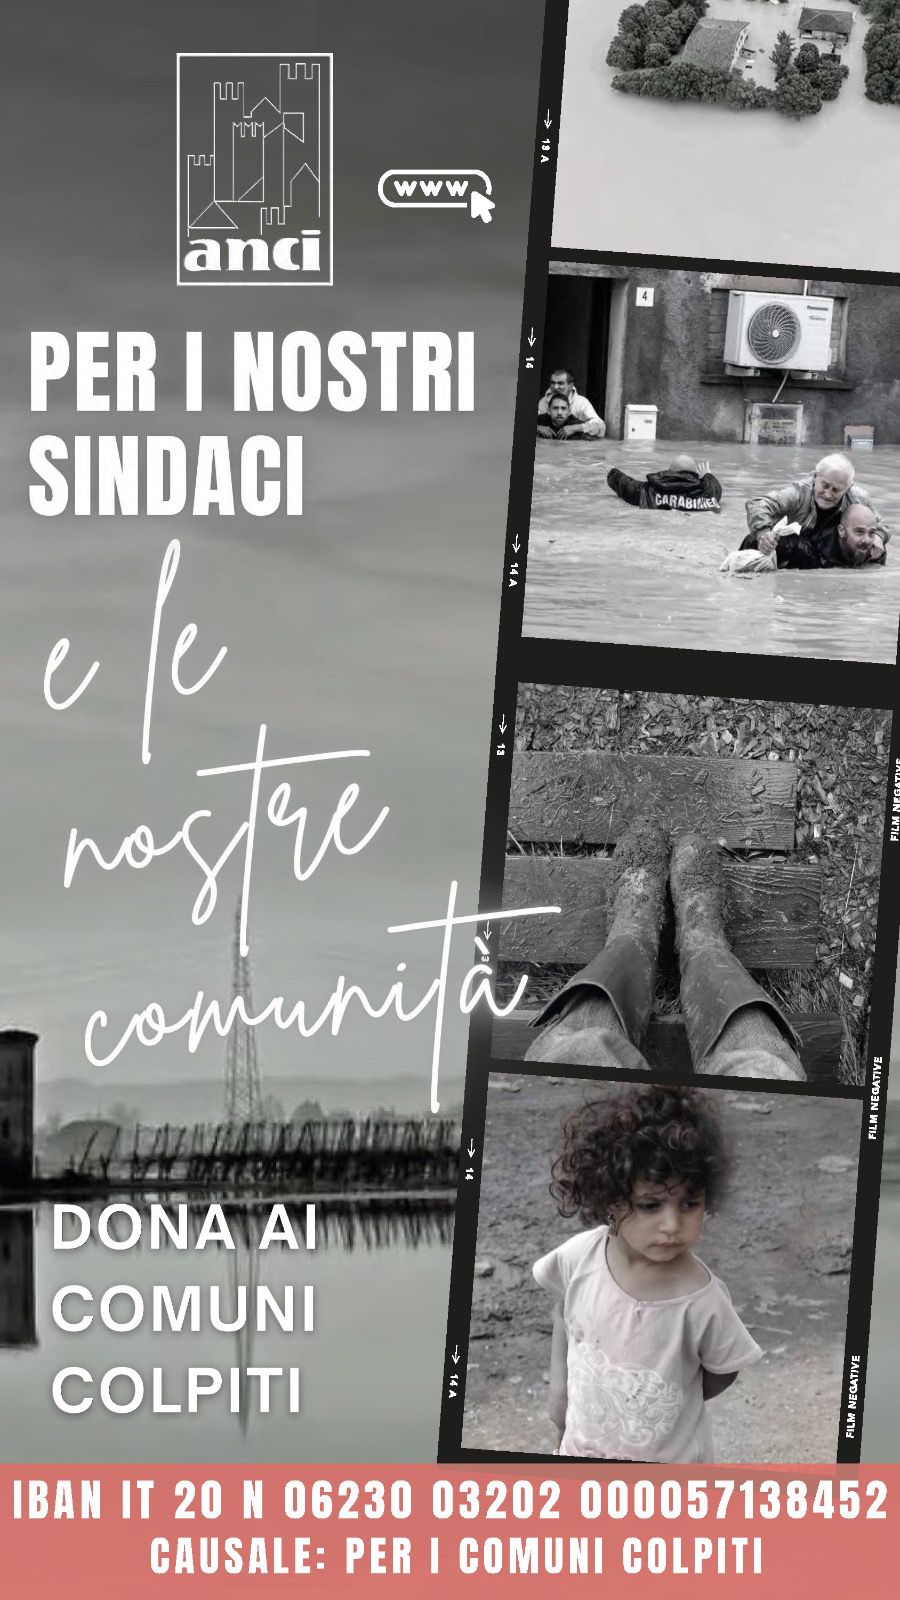 Immagine Raccolta fondi ANCI per i comuni colpiti dall'alluvione in Emilia Romagna